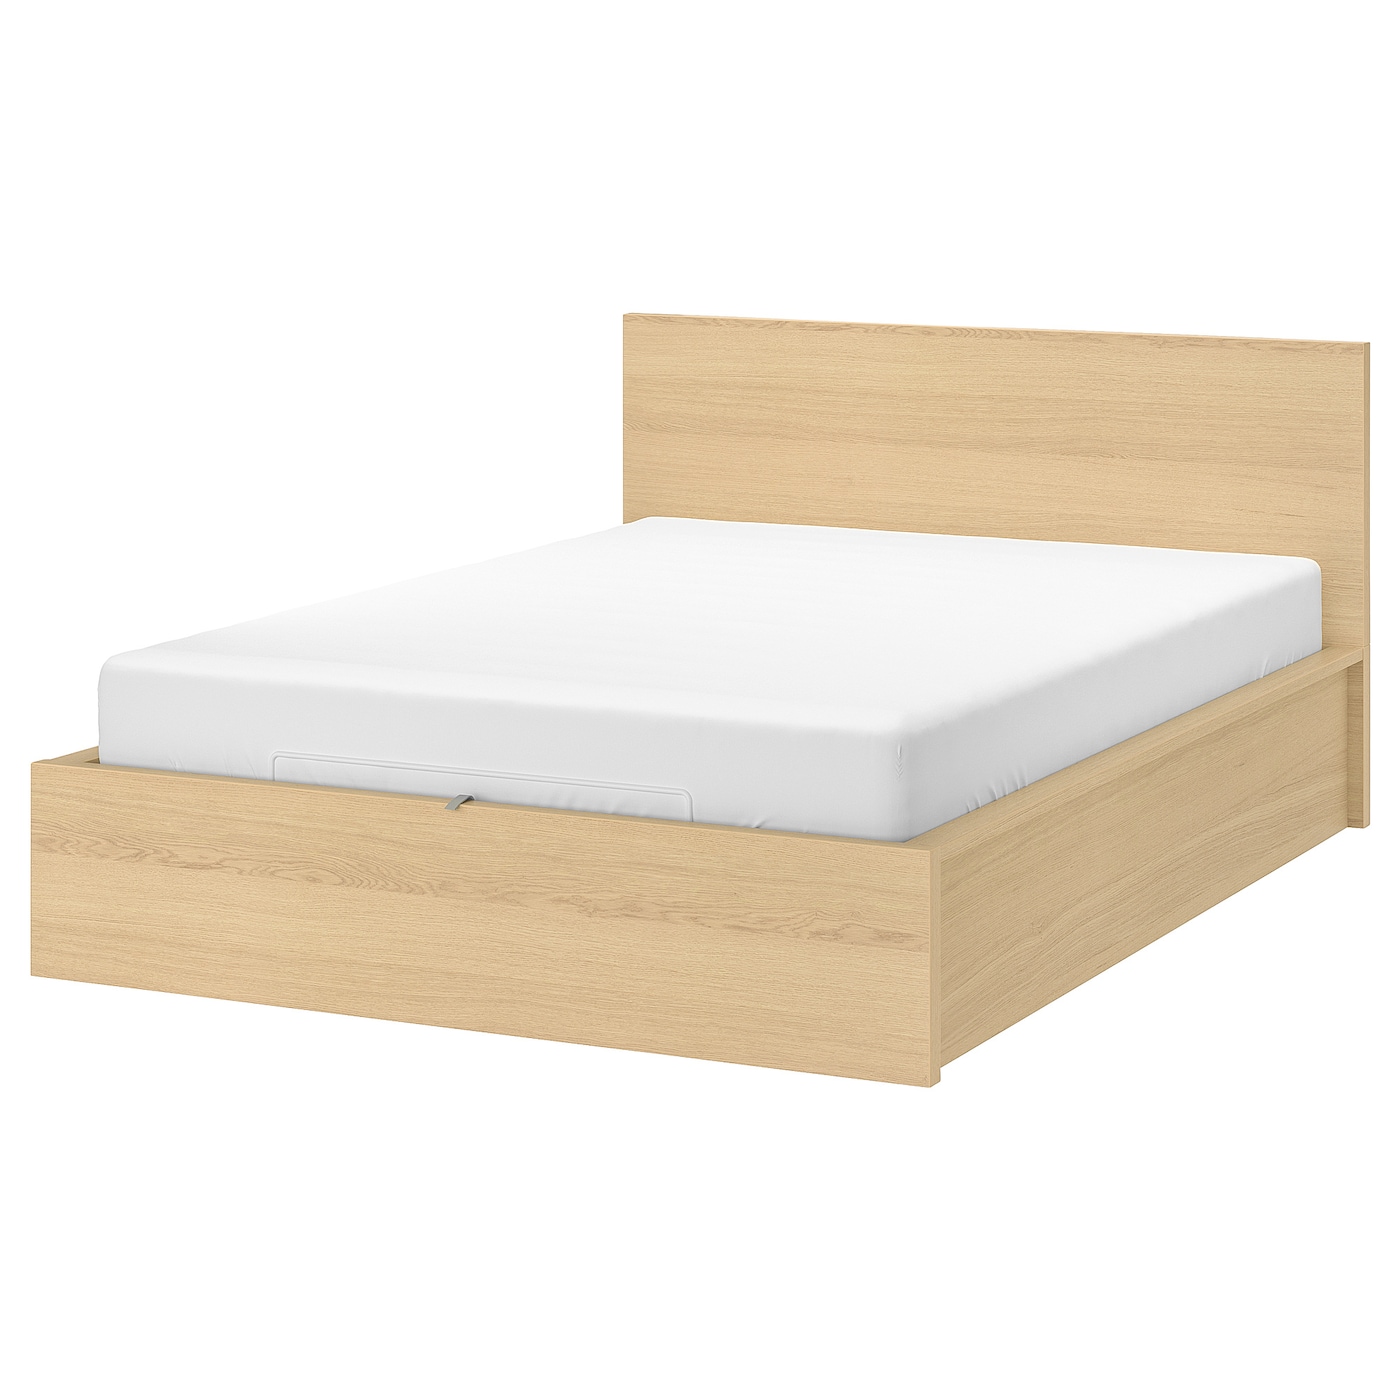 Кровать с ящиком для хранения - IKEA MALM, 200х180 см, под беленый дуб, МАЛЬМ ИКЕА